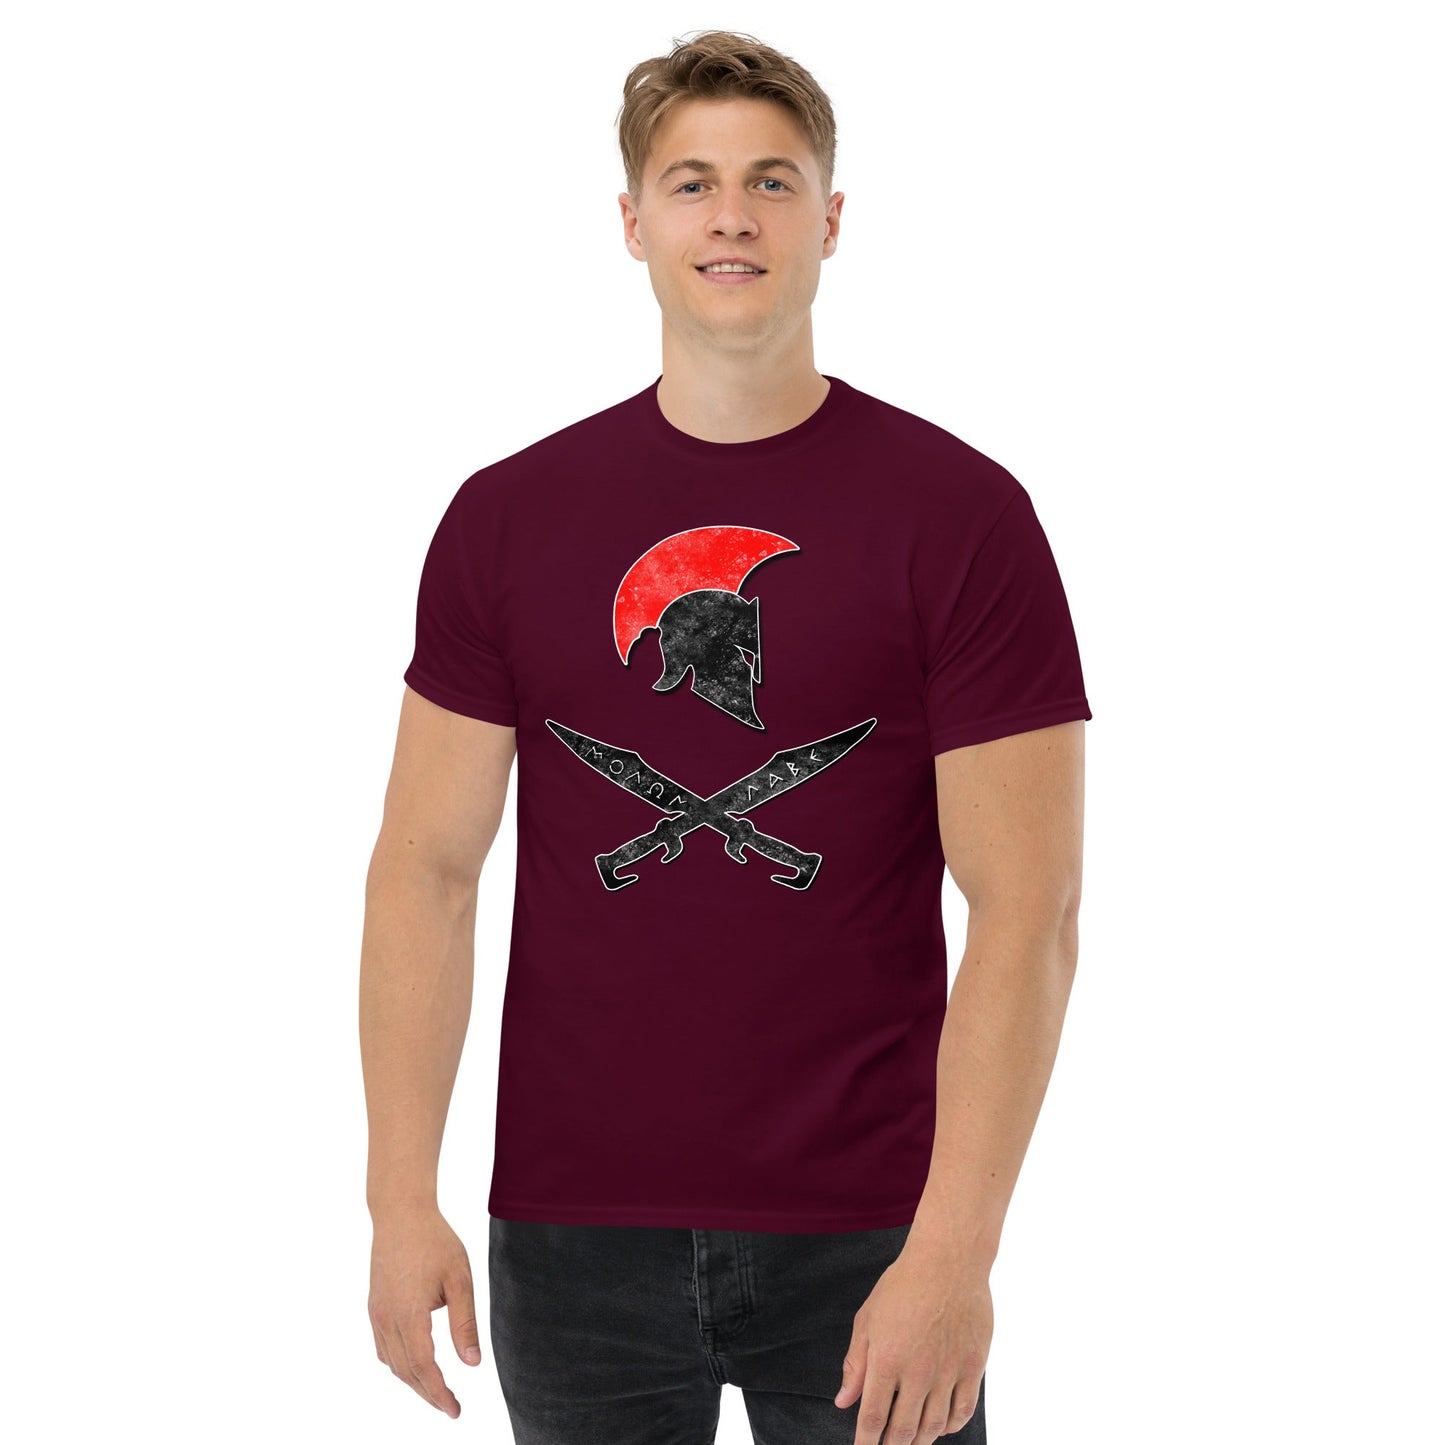 Spartan Molon Labe Swords T-shirt